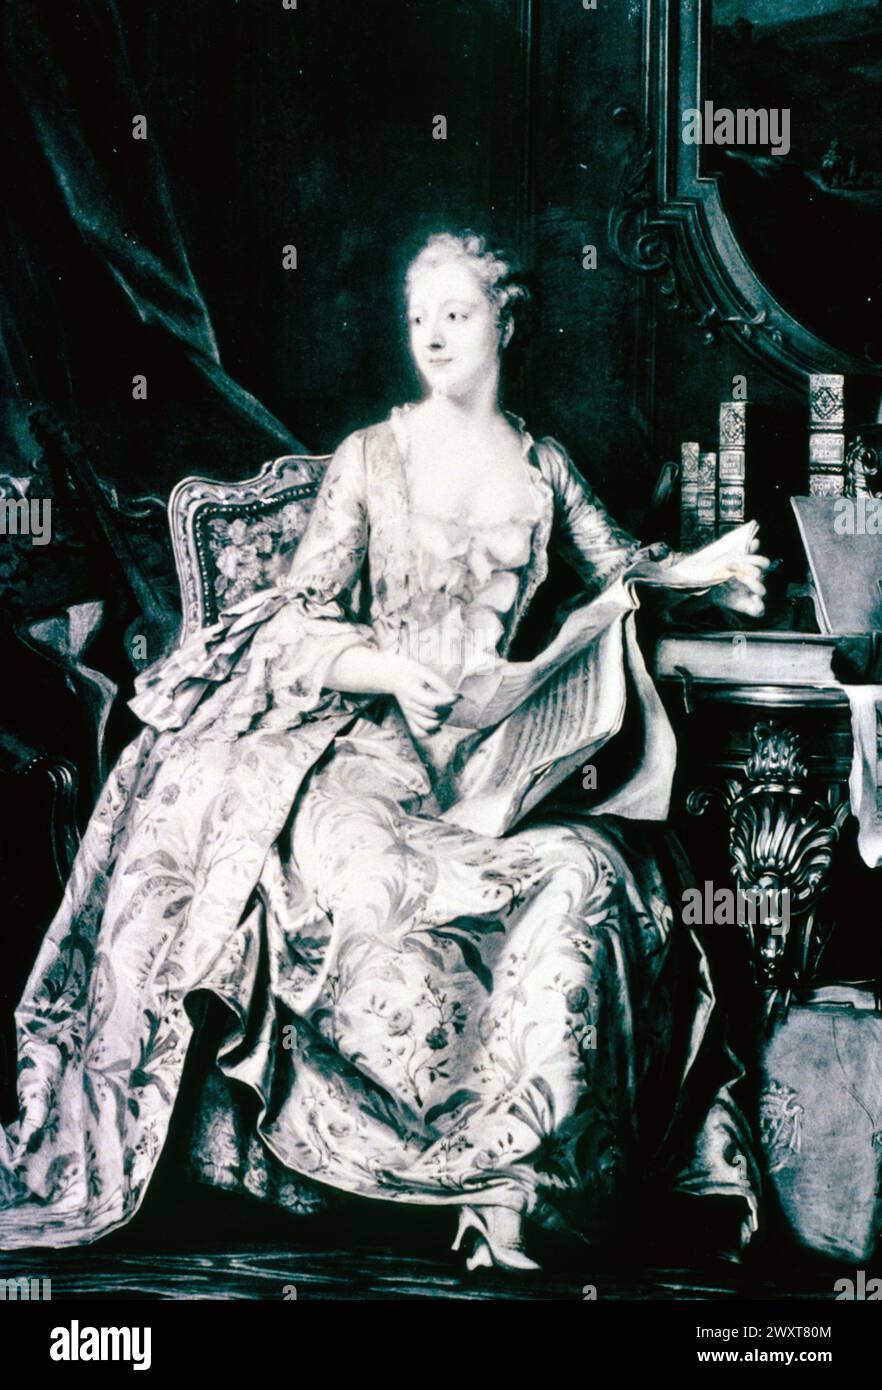 Jeanne Antoinette, marquise de Pompadour, peinture de l'artiste français Maurice Quentin de la Tour, France XVIIIe siècle Banque D'Images